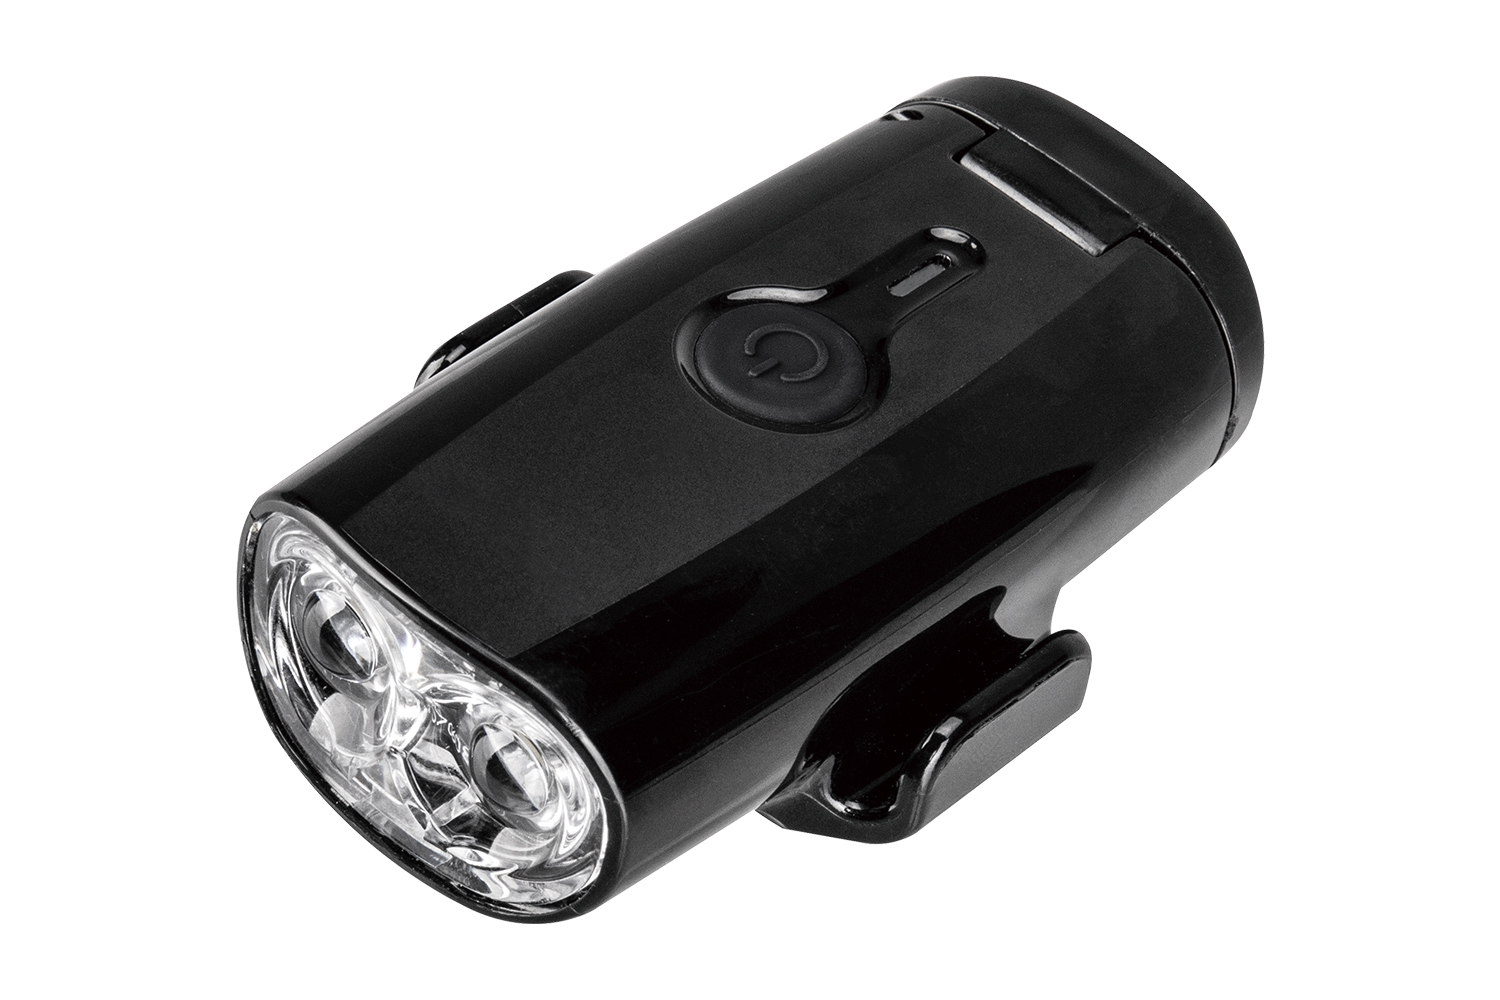  Передний фонарь для велосипеда Topeak Headlux 150 AA